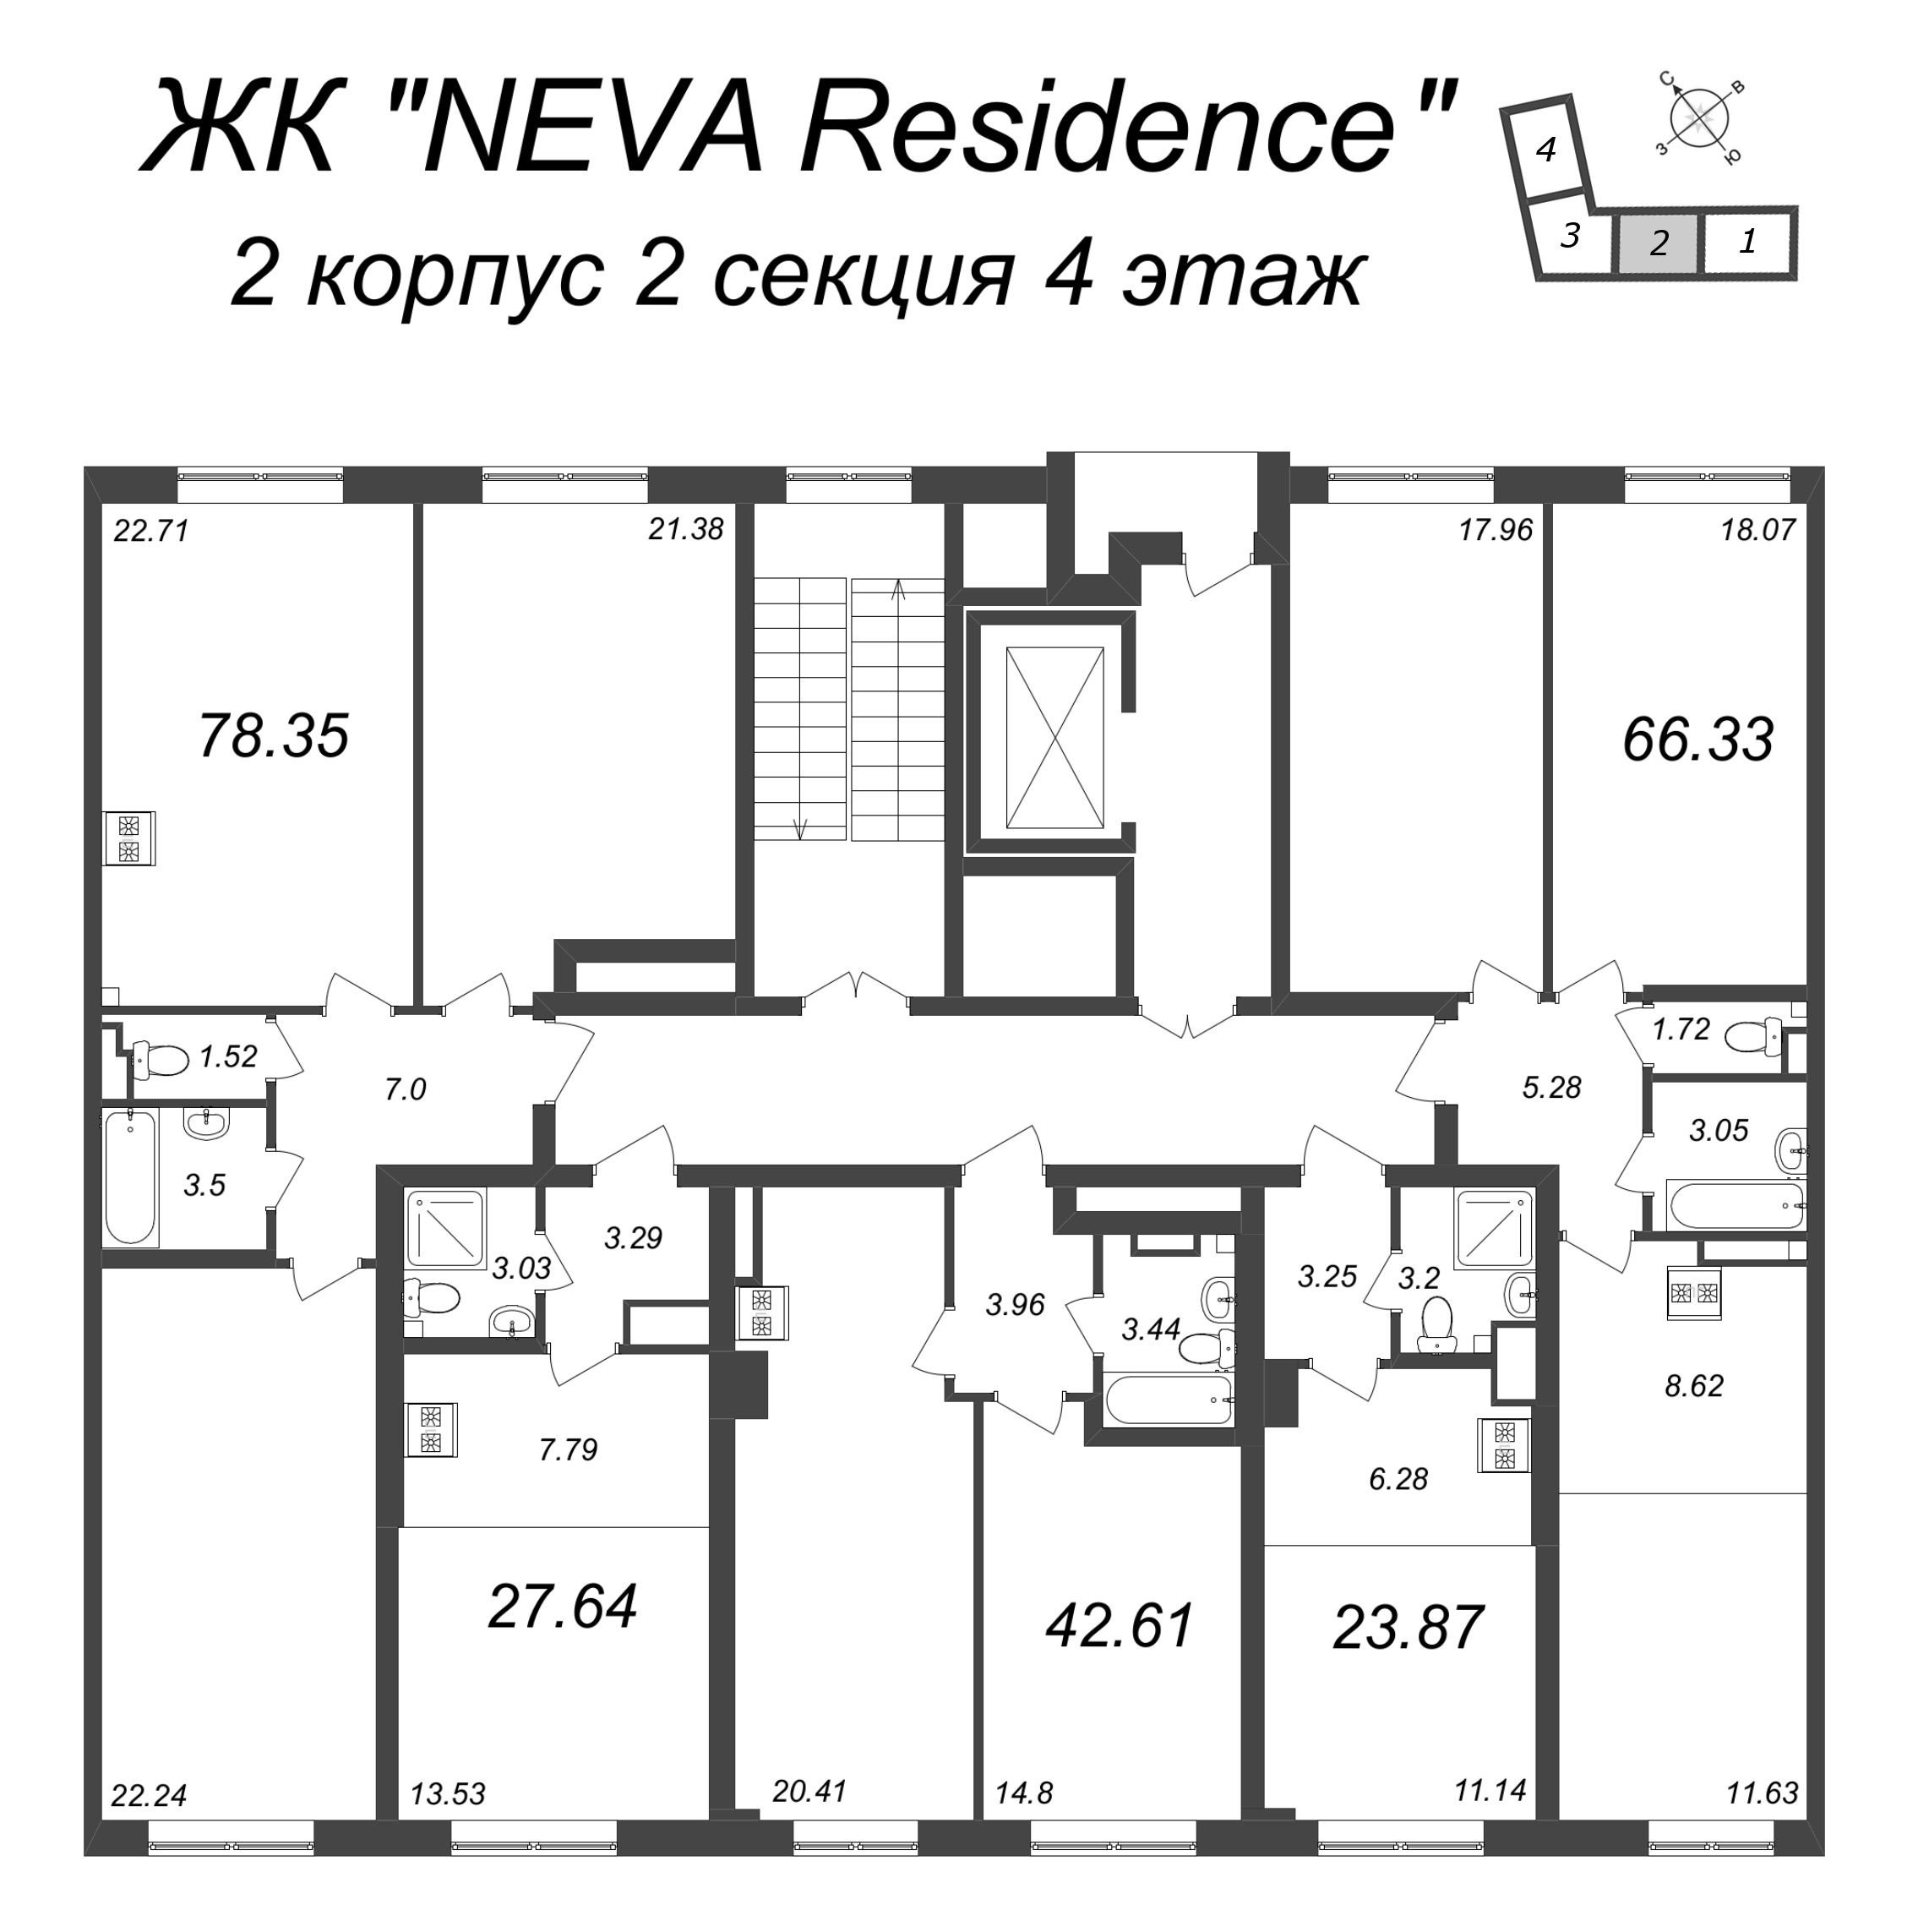 2-комнатная (Евро) квартира, 42.61 м² в ЖК "Neva Residence" - планировка этажа